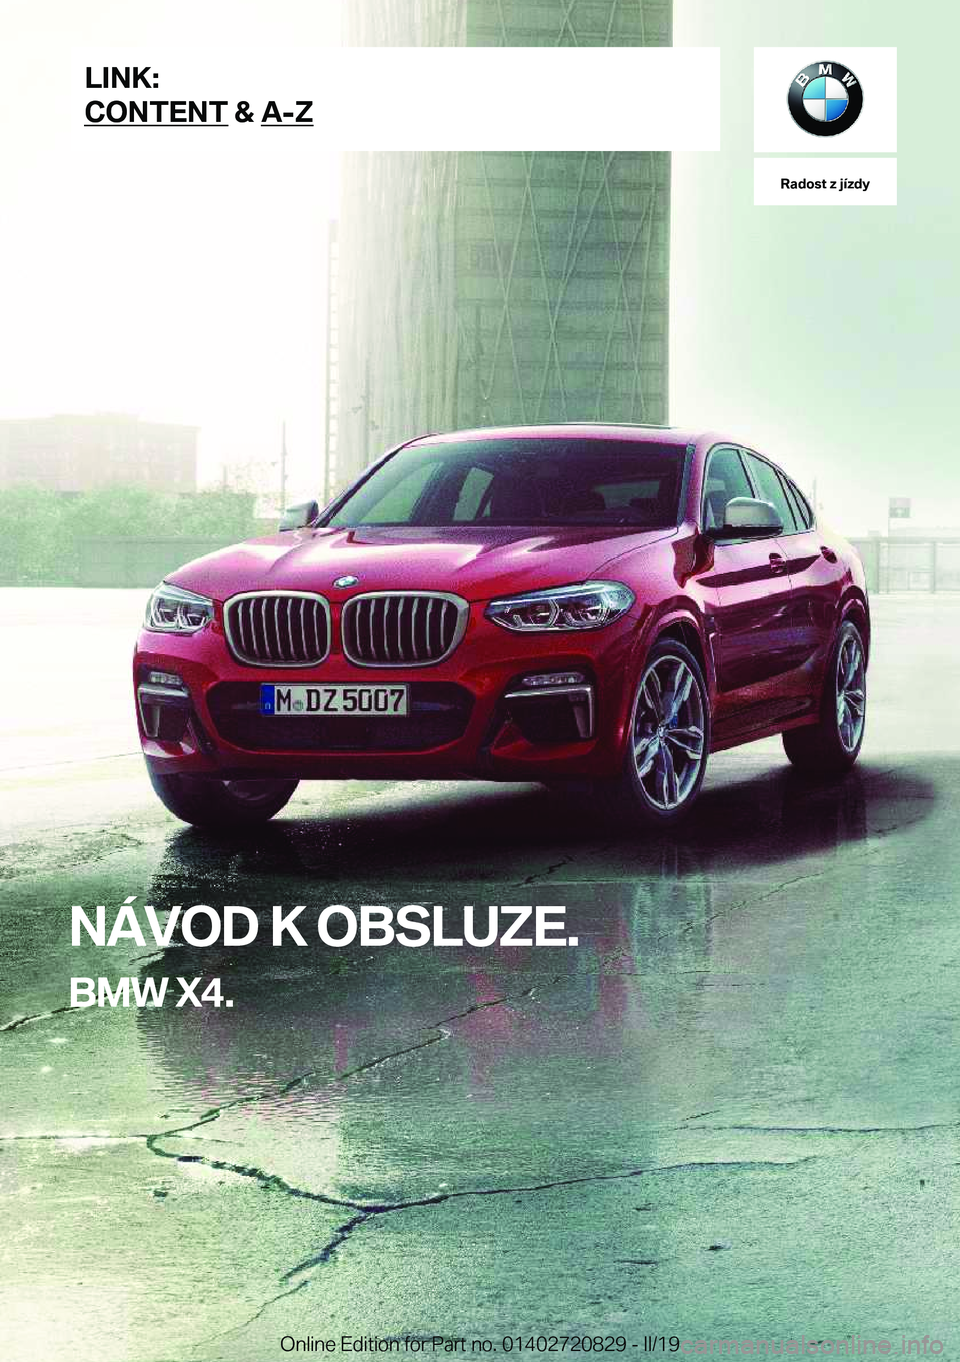 BMW X4 2019  Návod na použití (in Czech) �R�a�d�o�s�t��z��j�